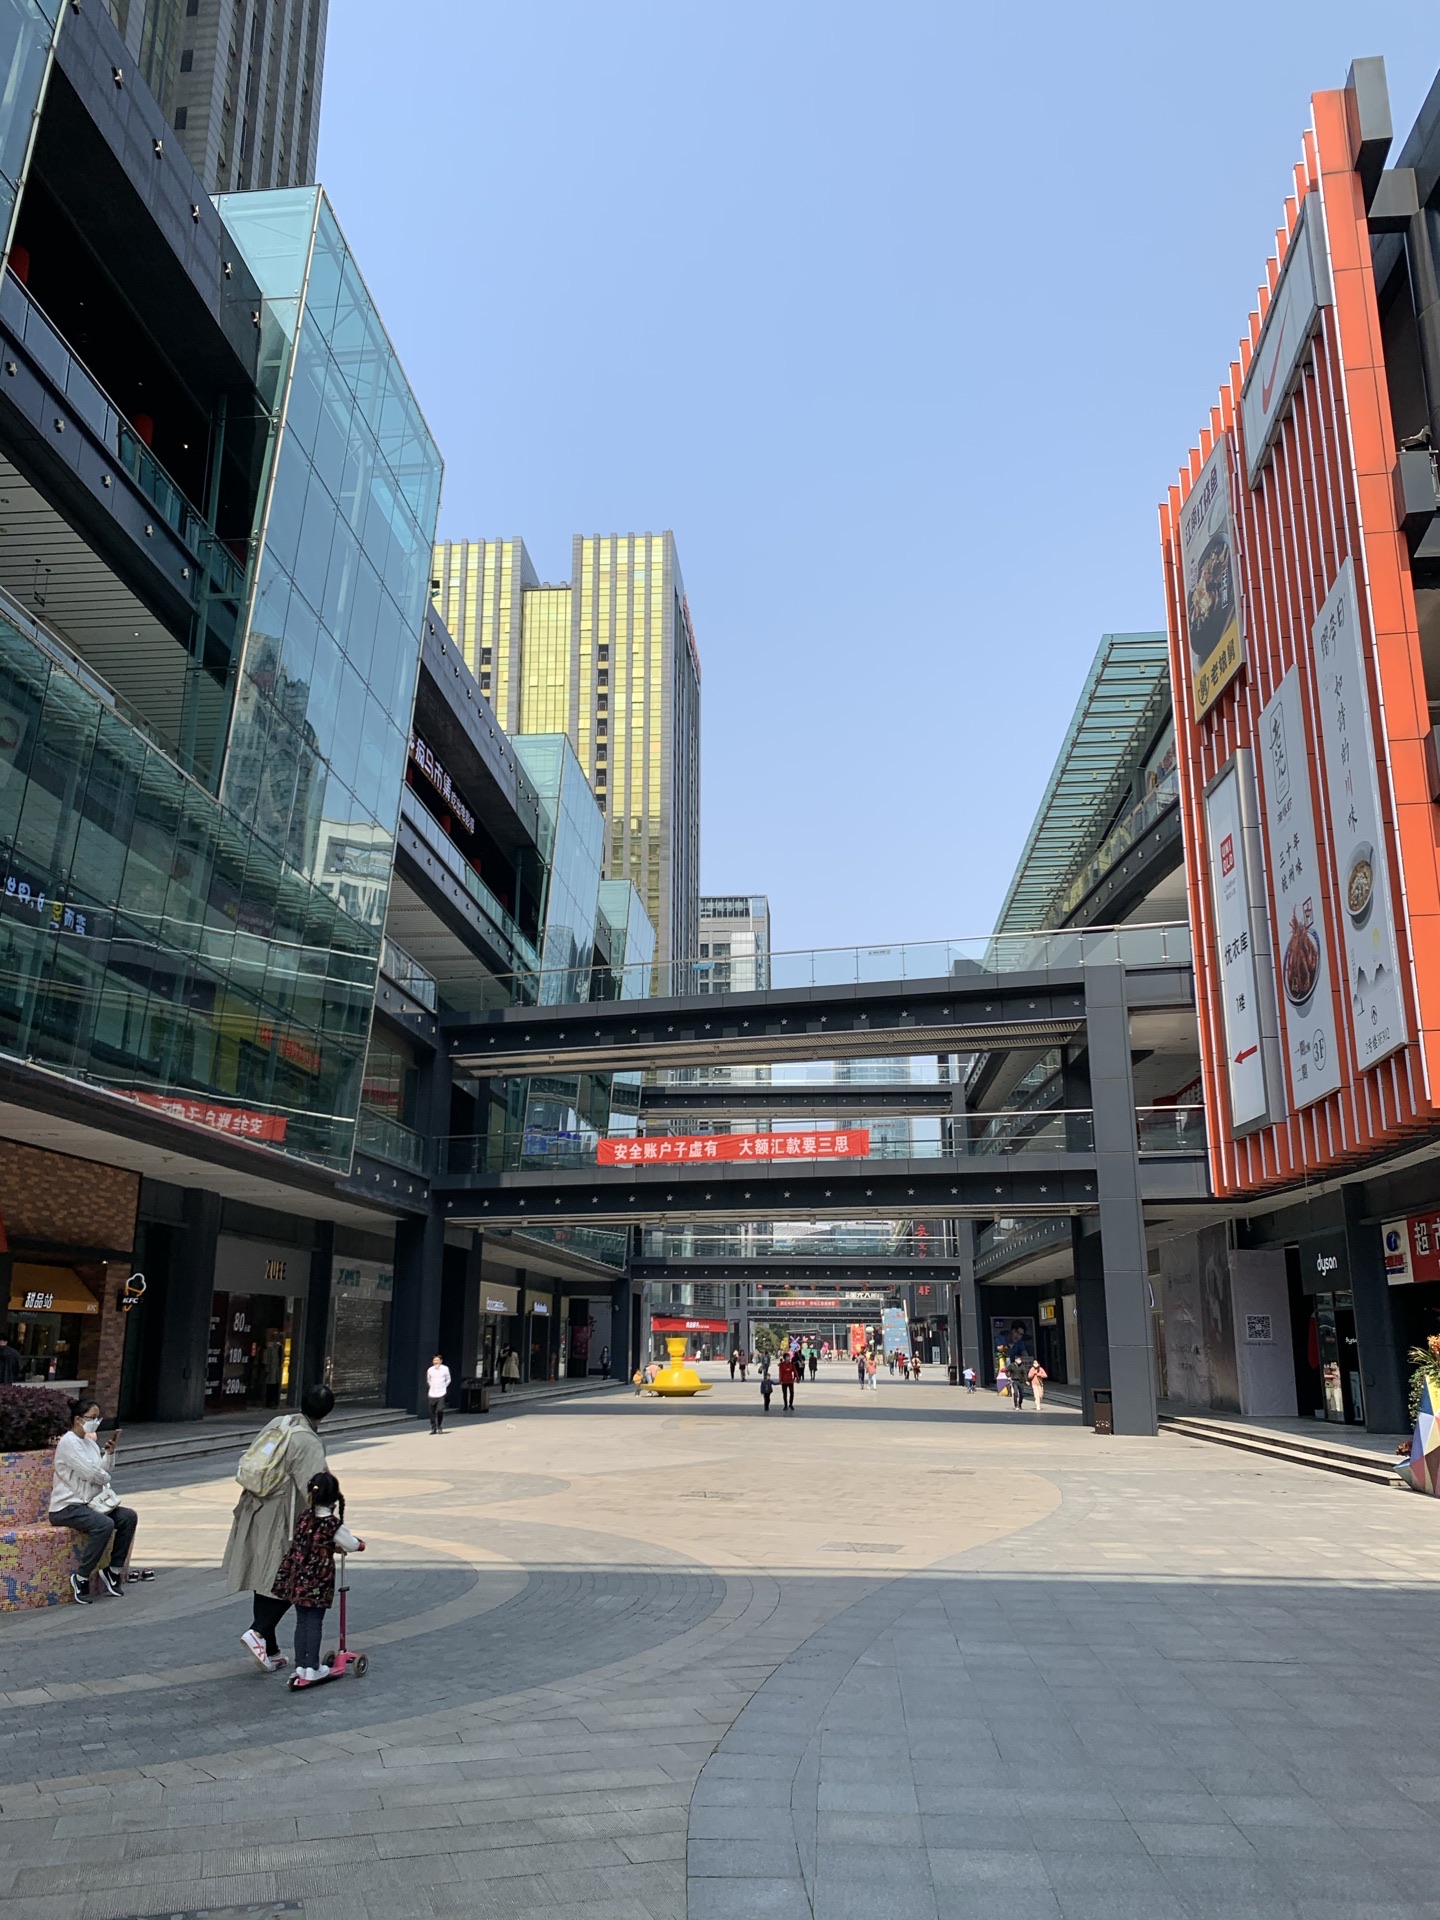 星光大道是杭州滨江区最早的商业中心 经过几期的建设 这里已经南北向